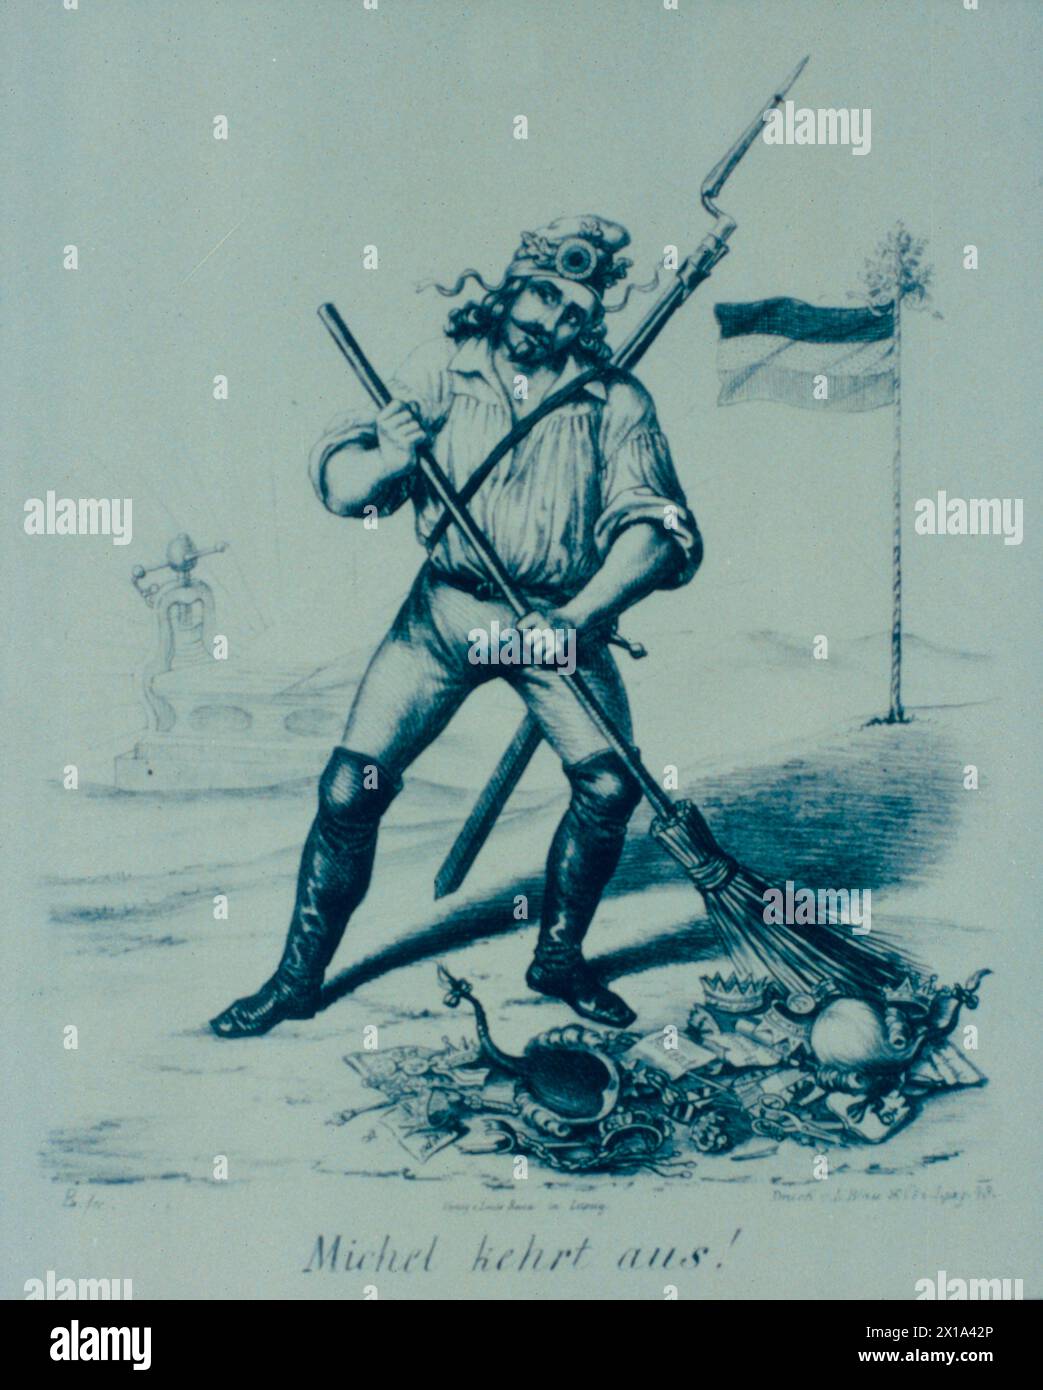 Ein deutscher Revolutionär von 1848 fegt die Symbole des Königs und des aristokratischen Privilegiums weg, Illustration Stockfoto